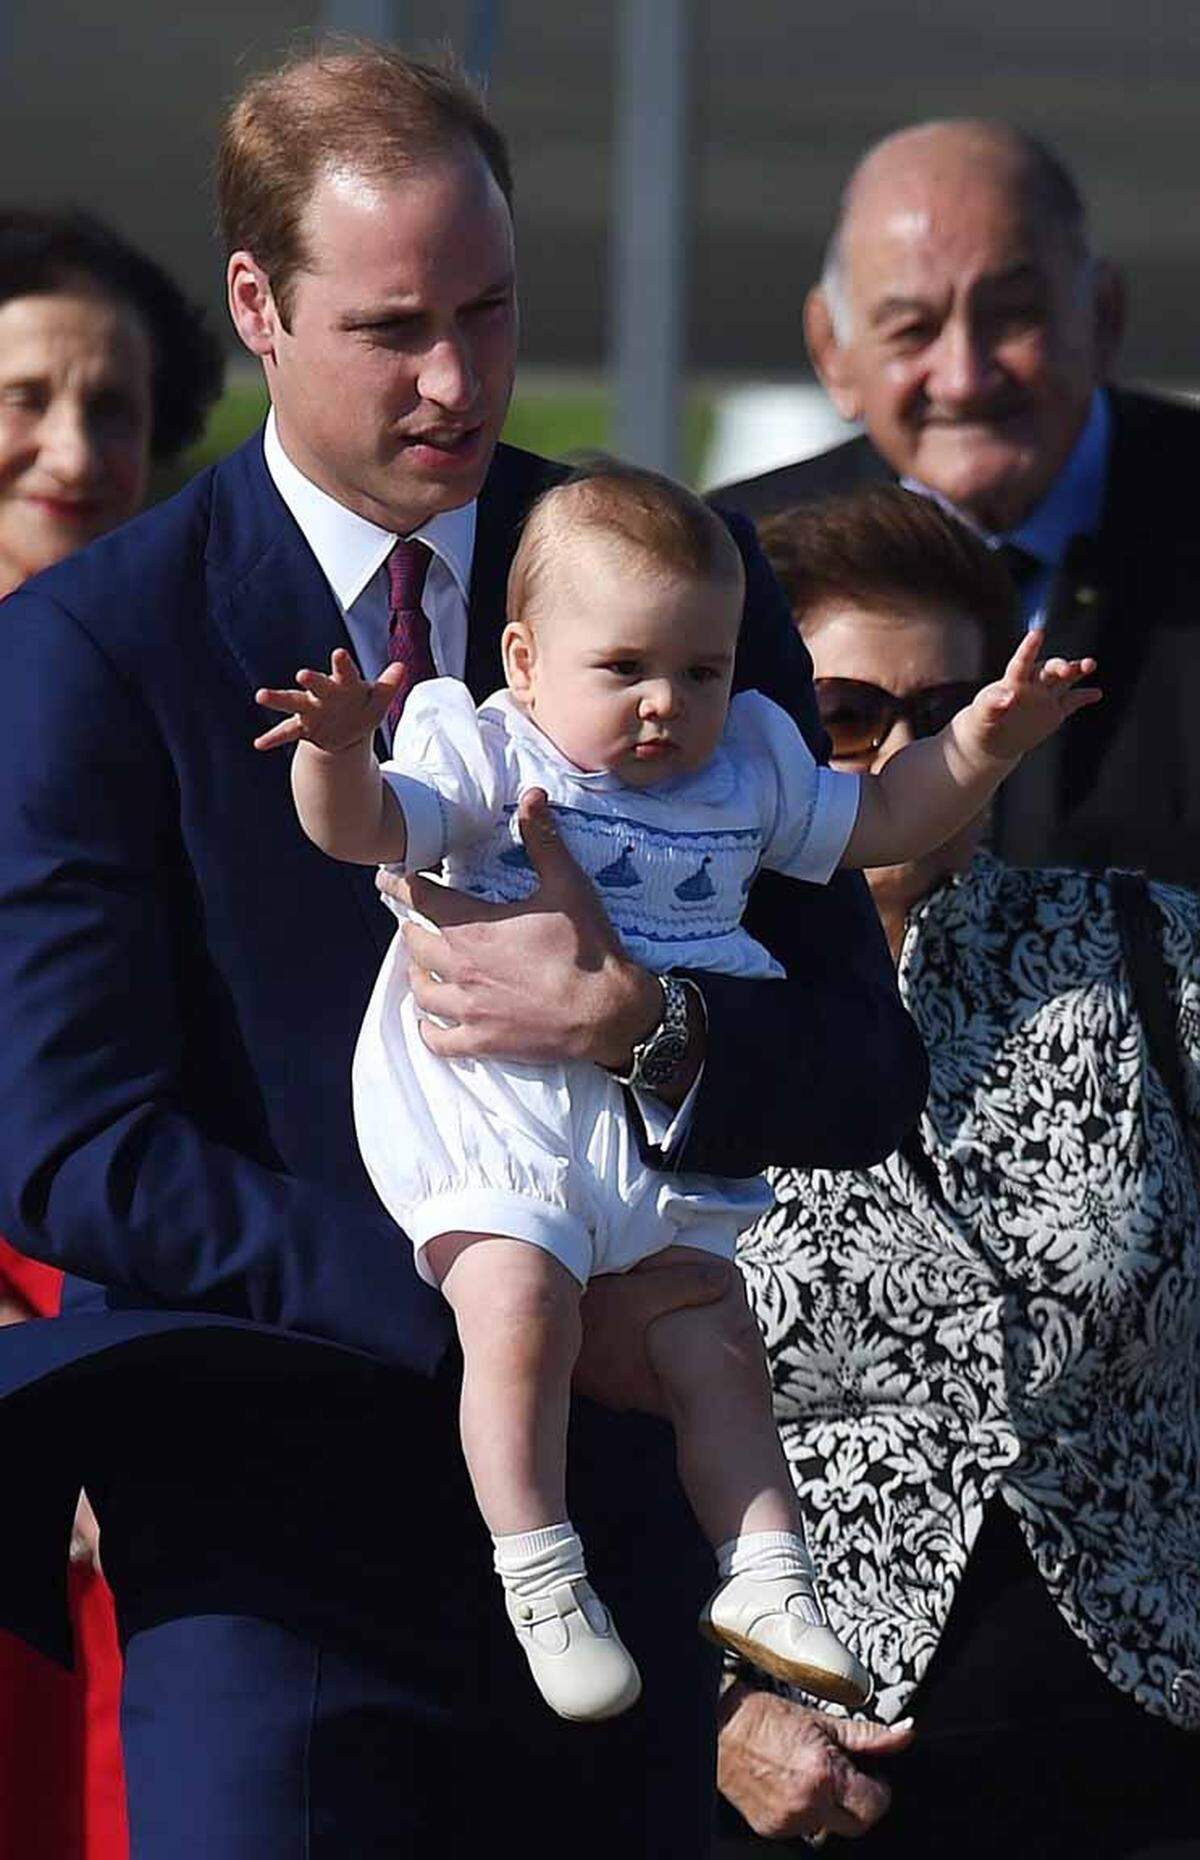 Denn vielen Eltern scheint der klassische Look des kleinen Prinzen zu gefallen. Viele Strampler, die das neun Monate alte Kleinkind trug, sind ebenfalls bereits vergriffen.